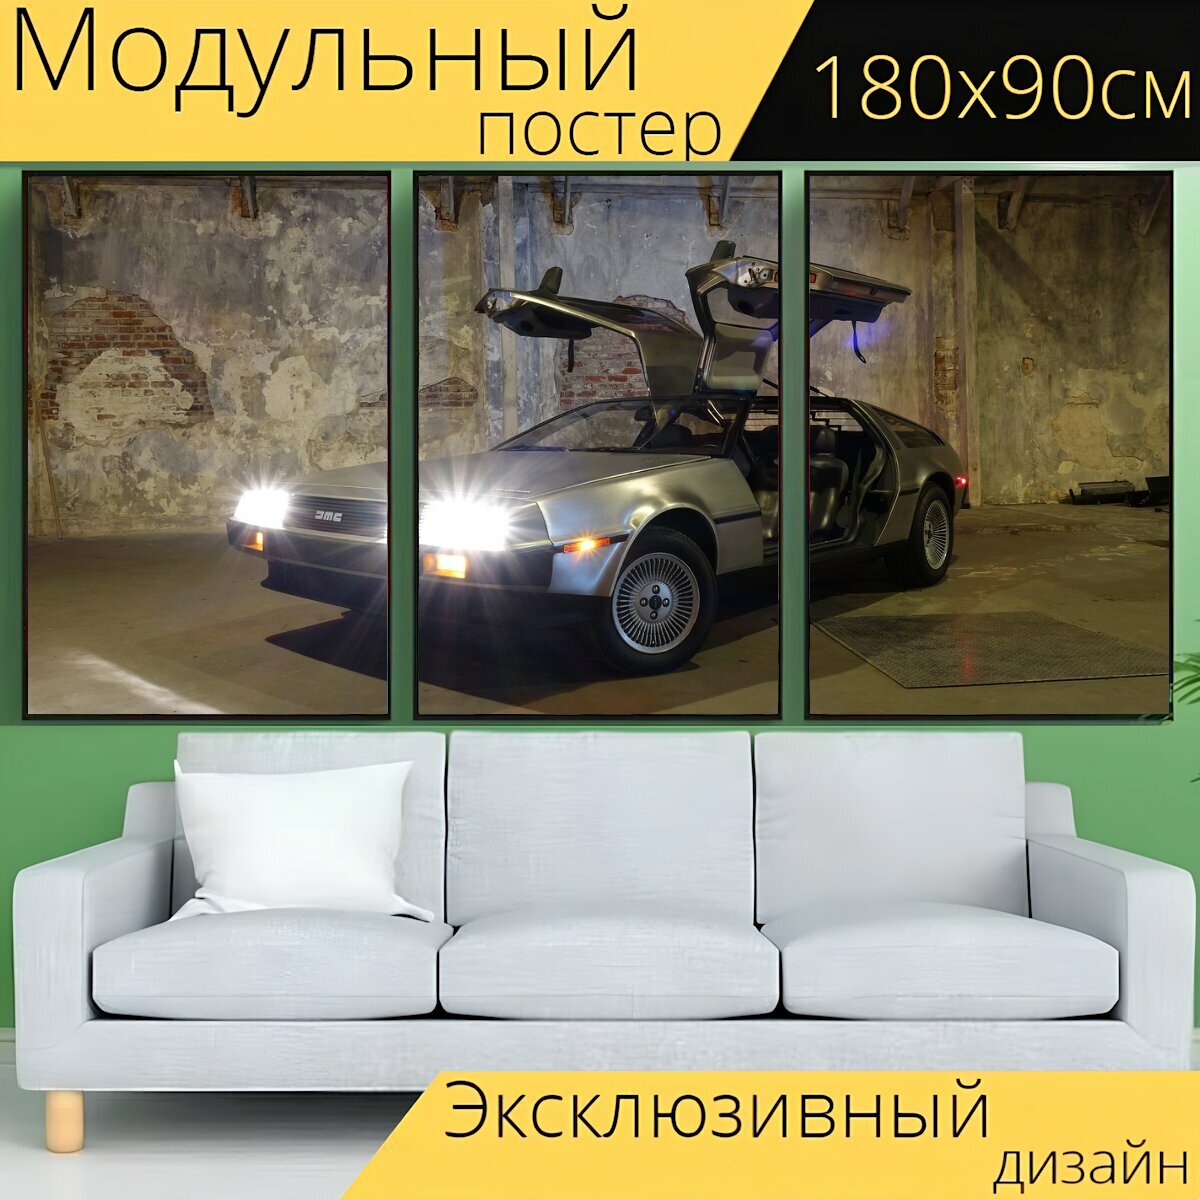 Модульный постер "Машина, асфальт, делориан" 180 x 90 см. для интерьера